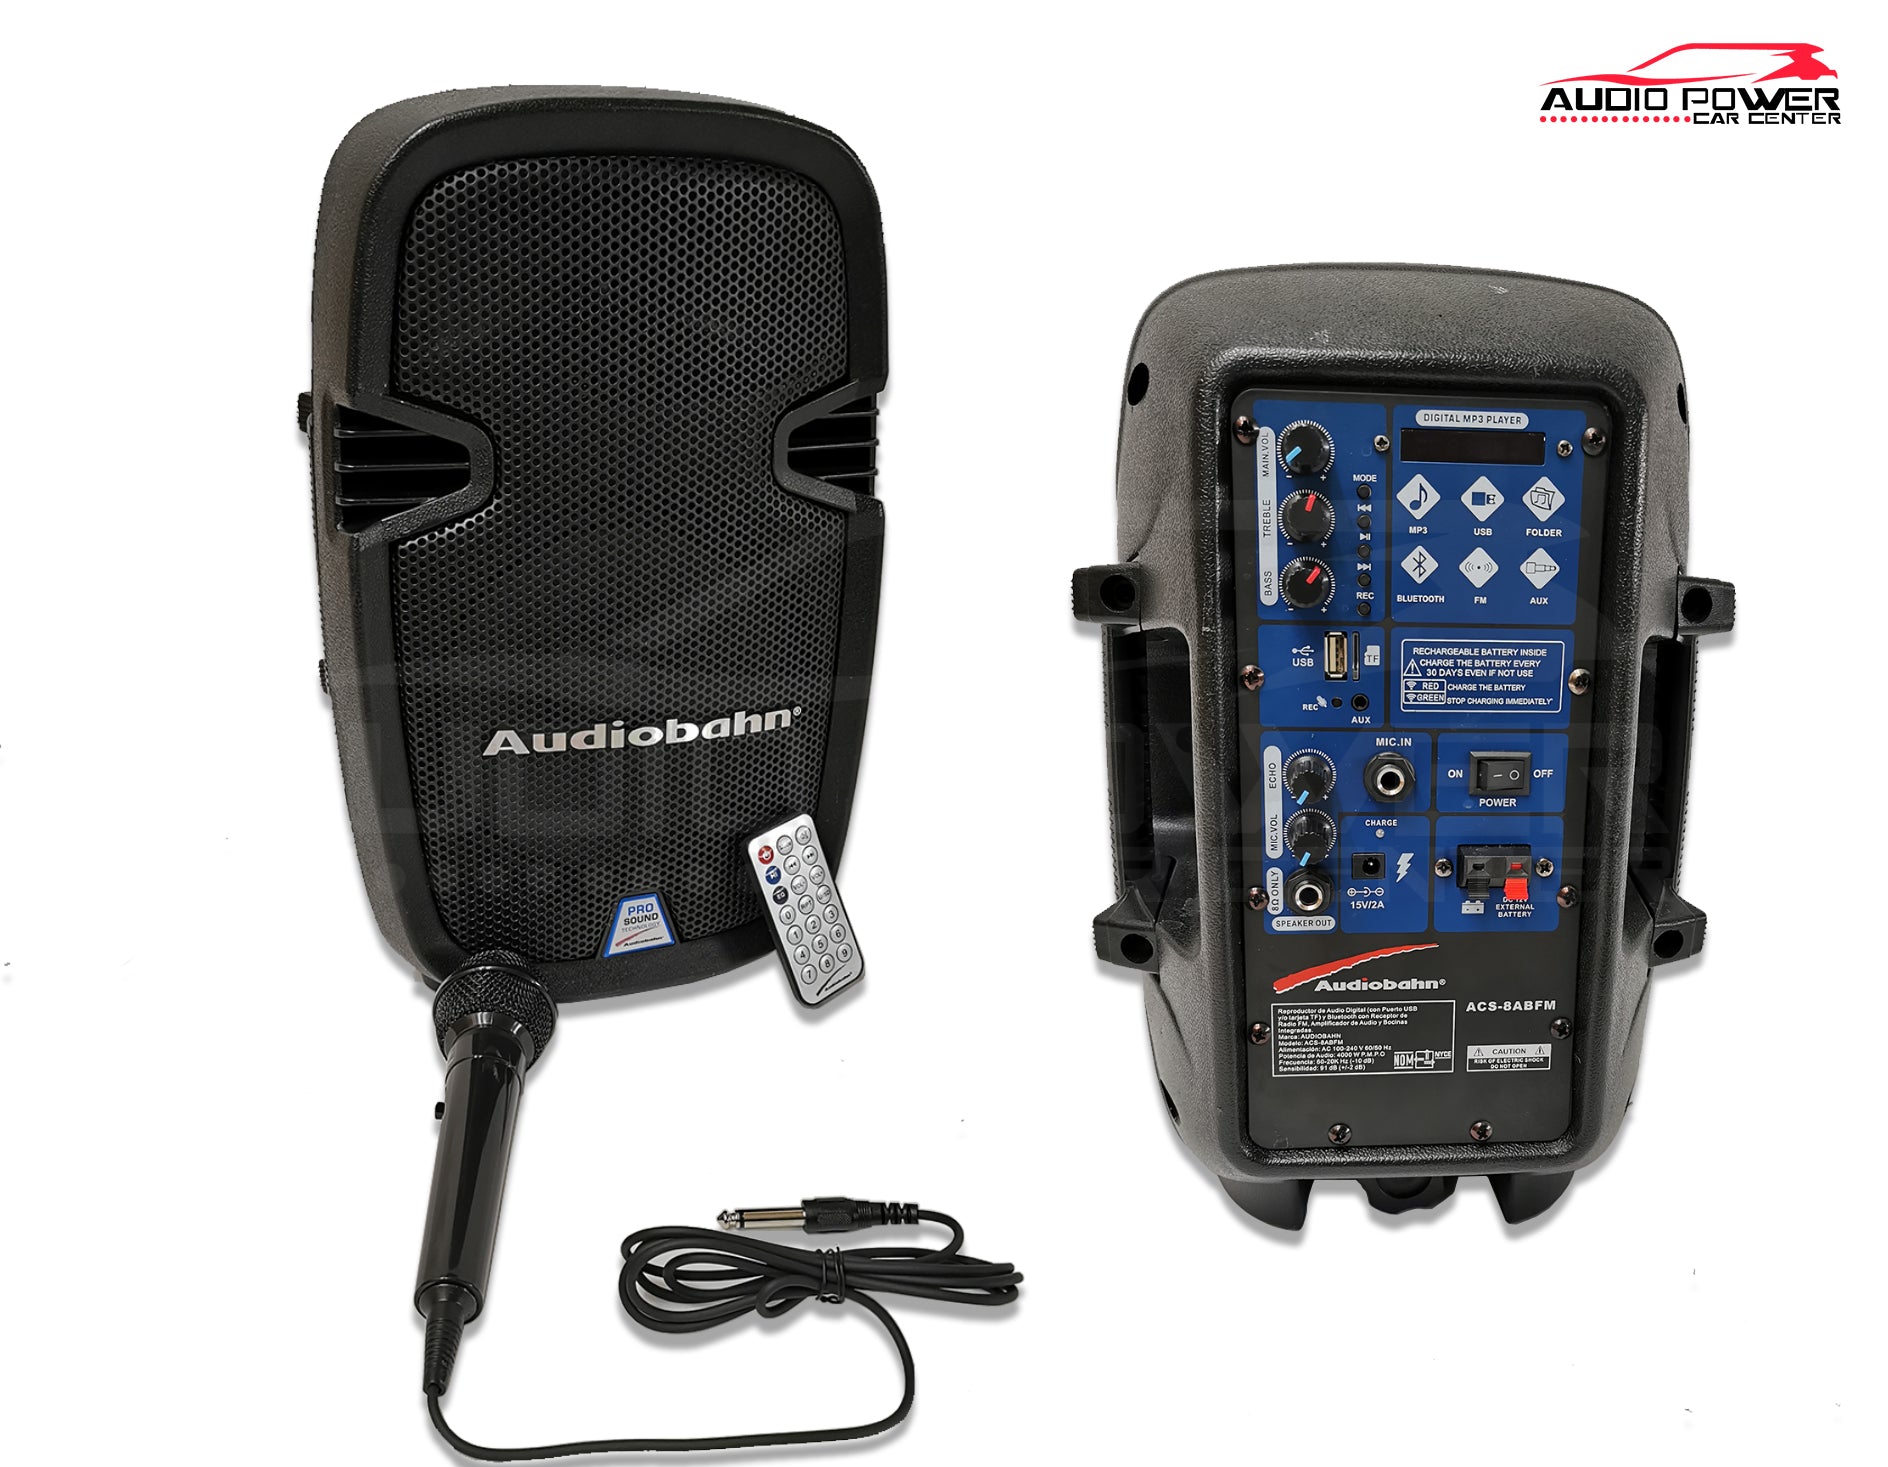 en voz alta Pulido fuego Audiobahn ACS-8ABFM Bocinas – Audio Power Mobile Shop SA de CV